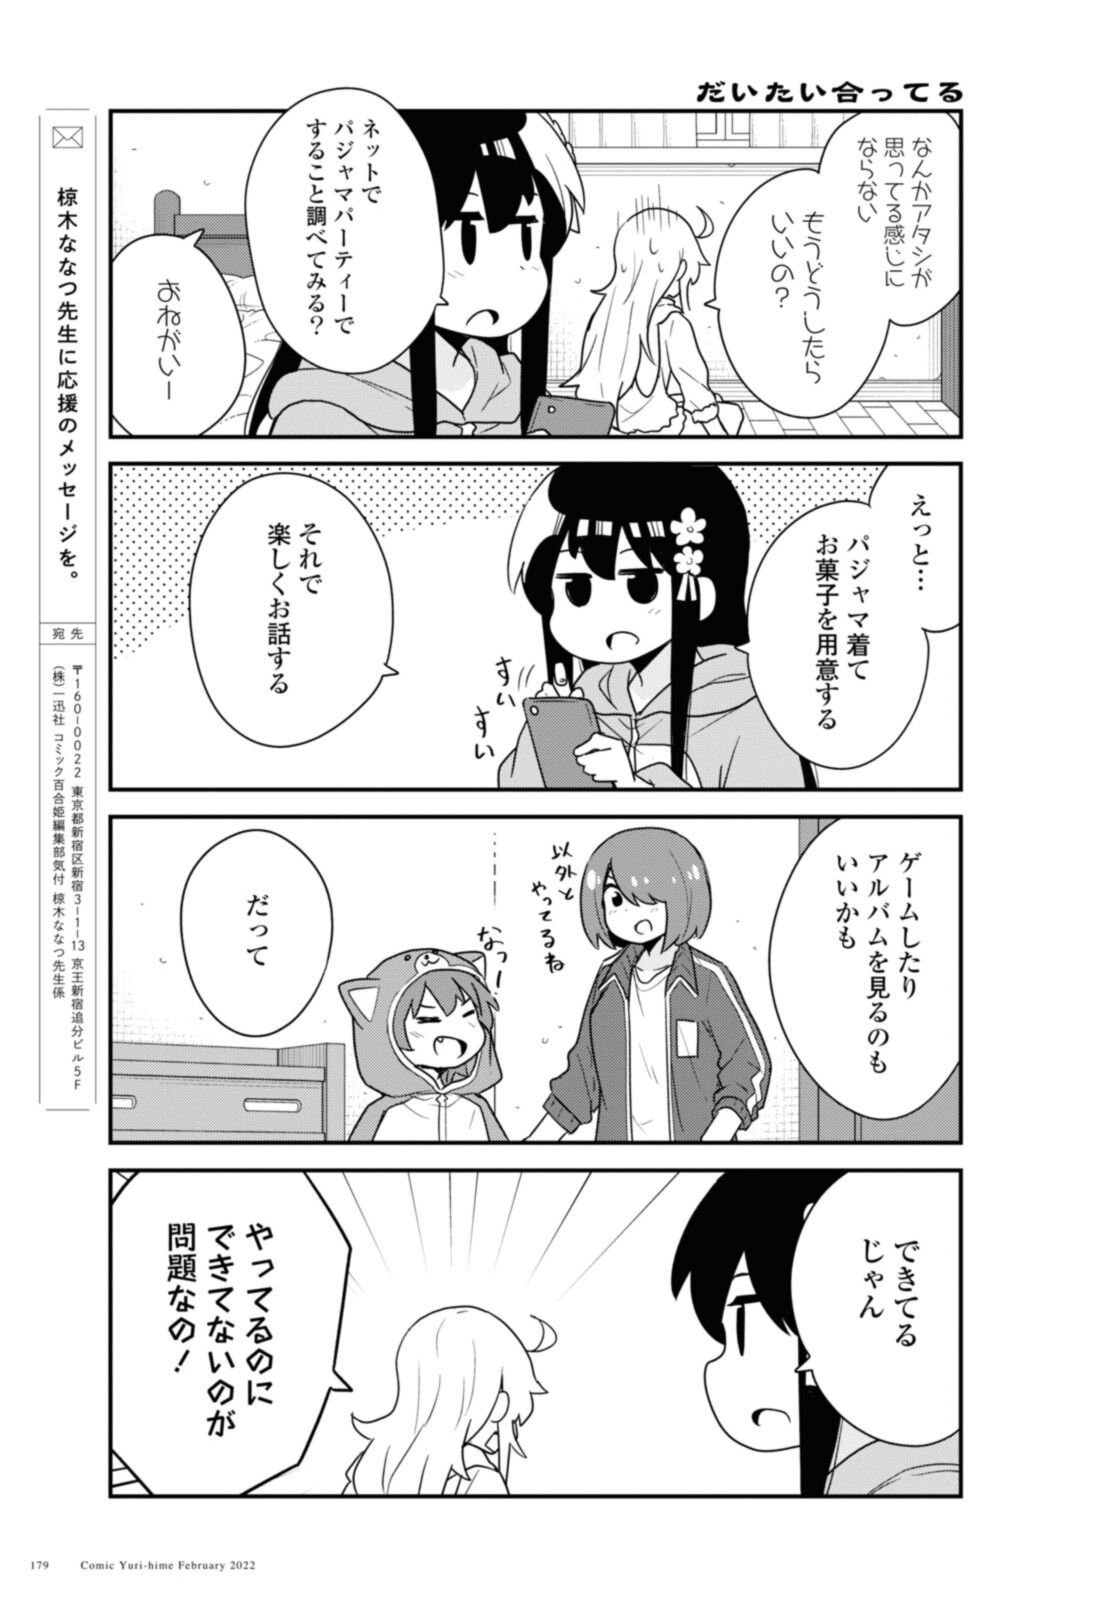 Watashi ni Tenshi ga Maiorita! - Chapter 92 - Page 15